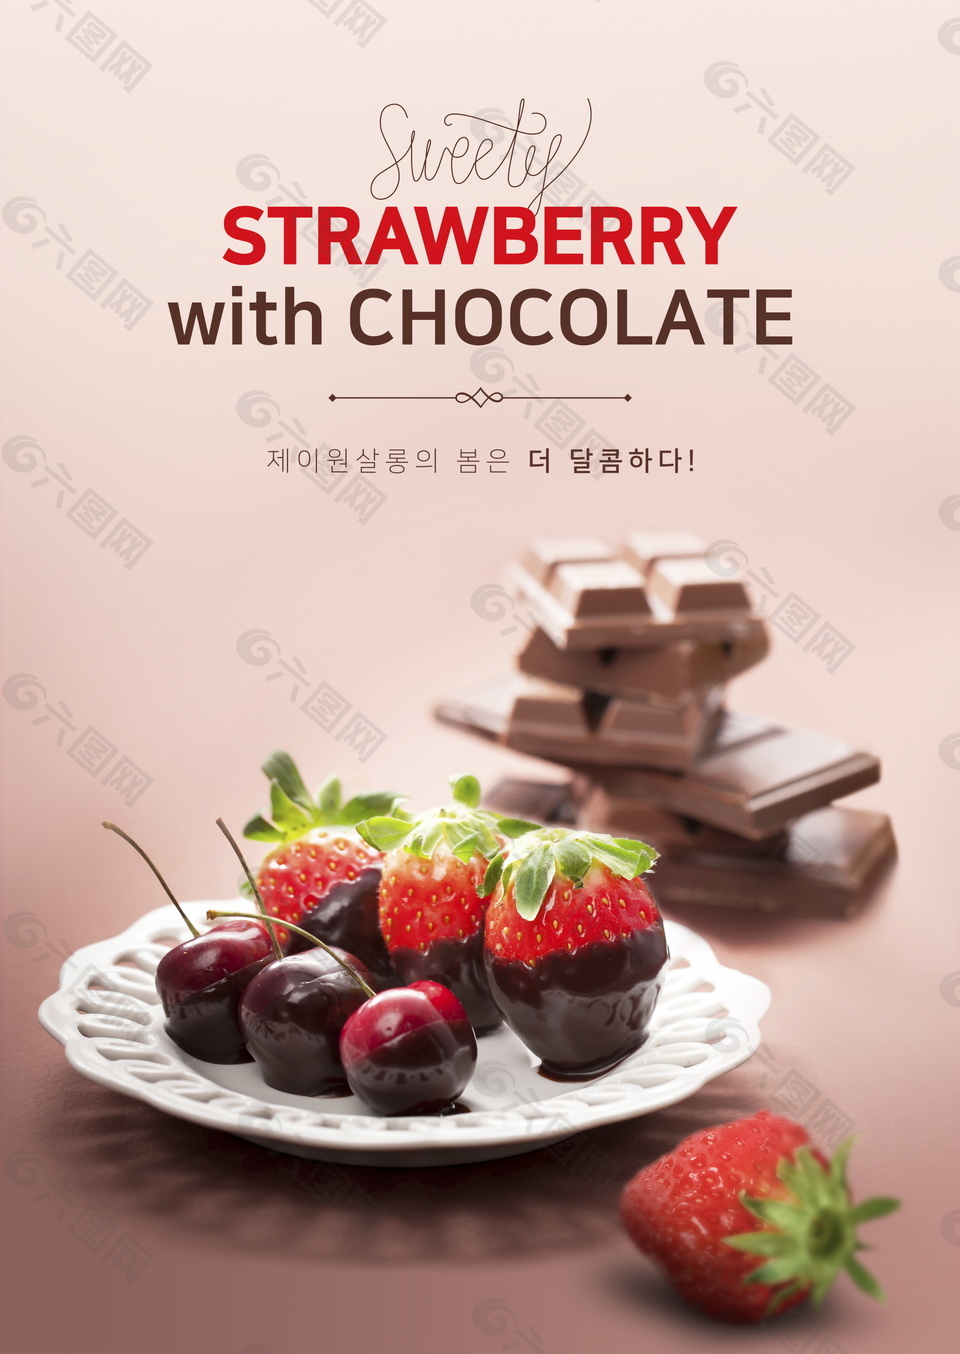 美味樱桃草莓巧克力点心海报设计